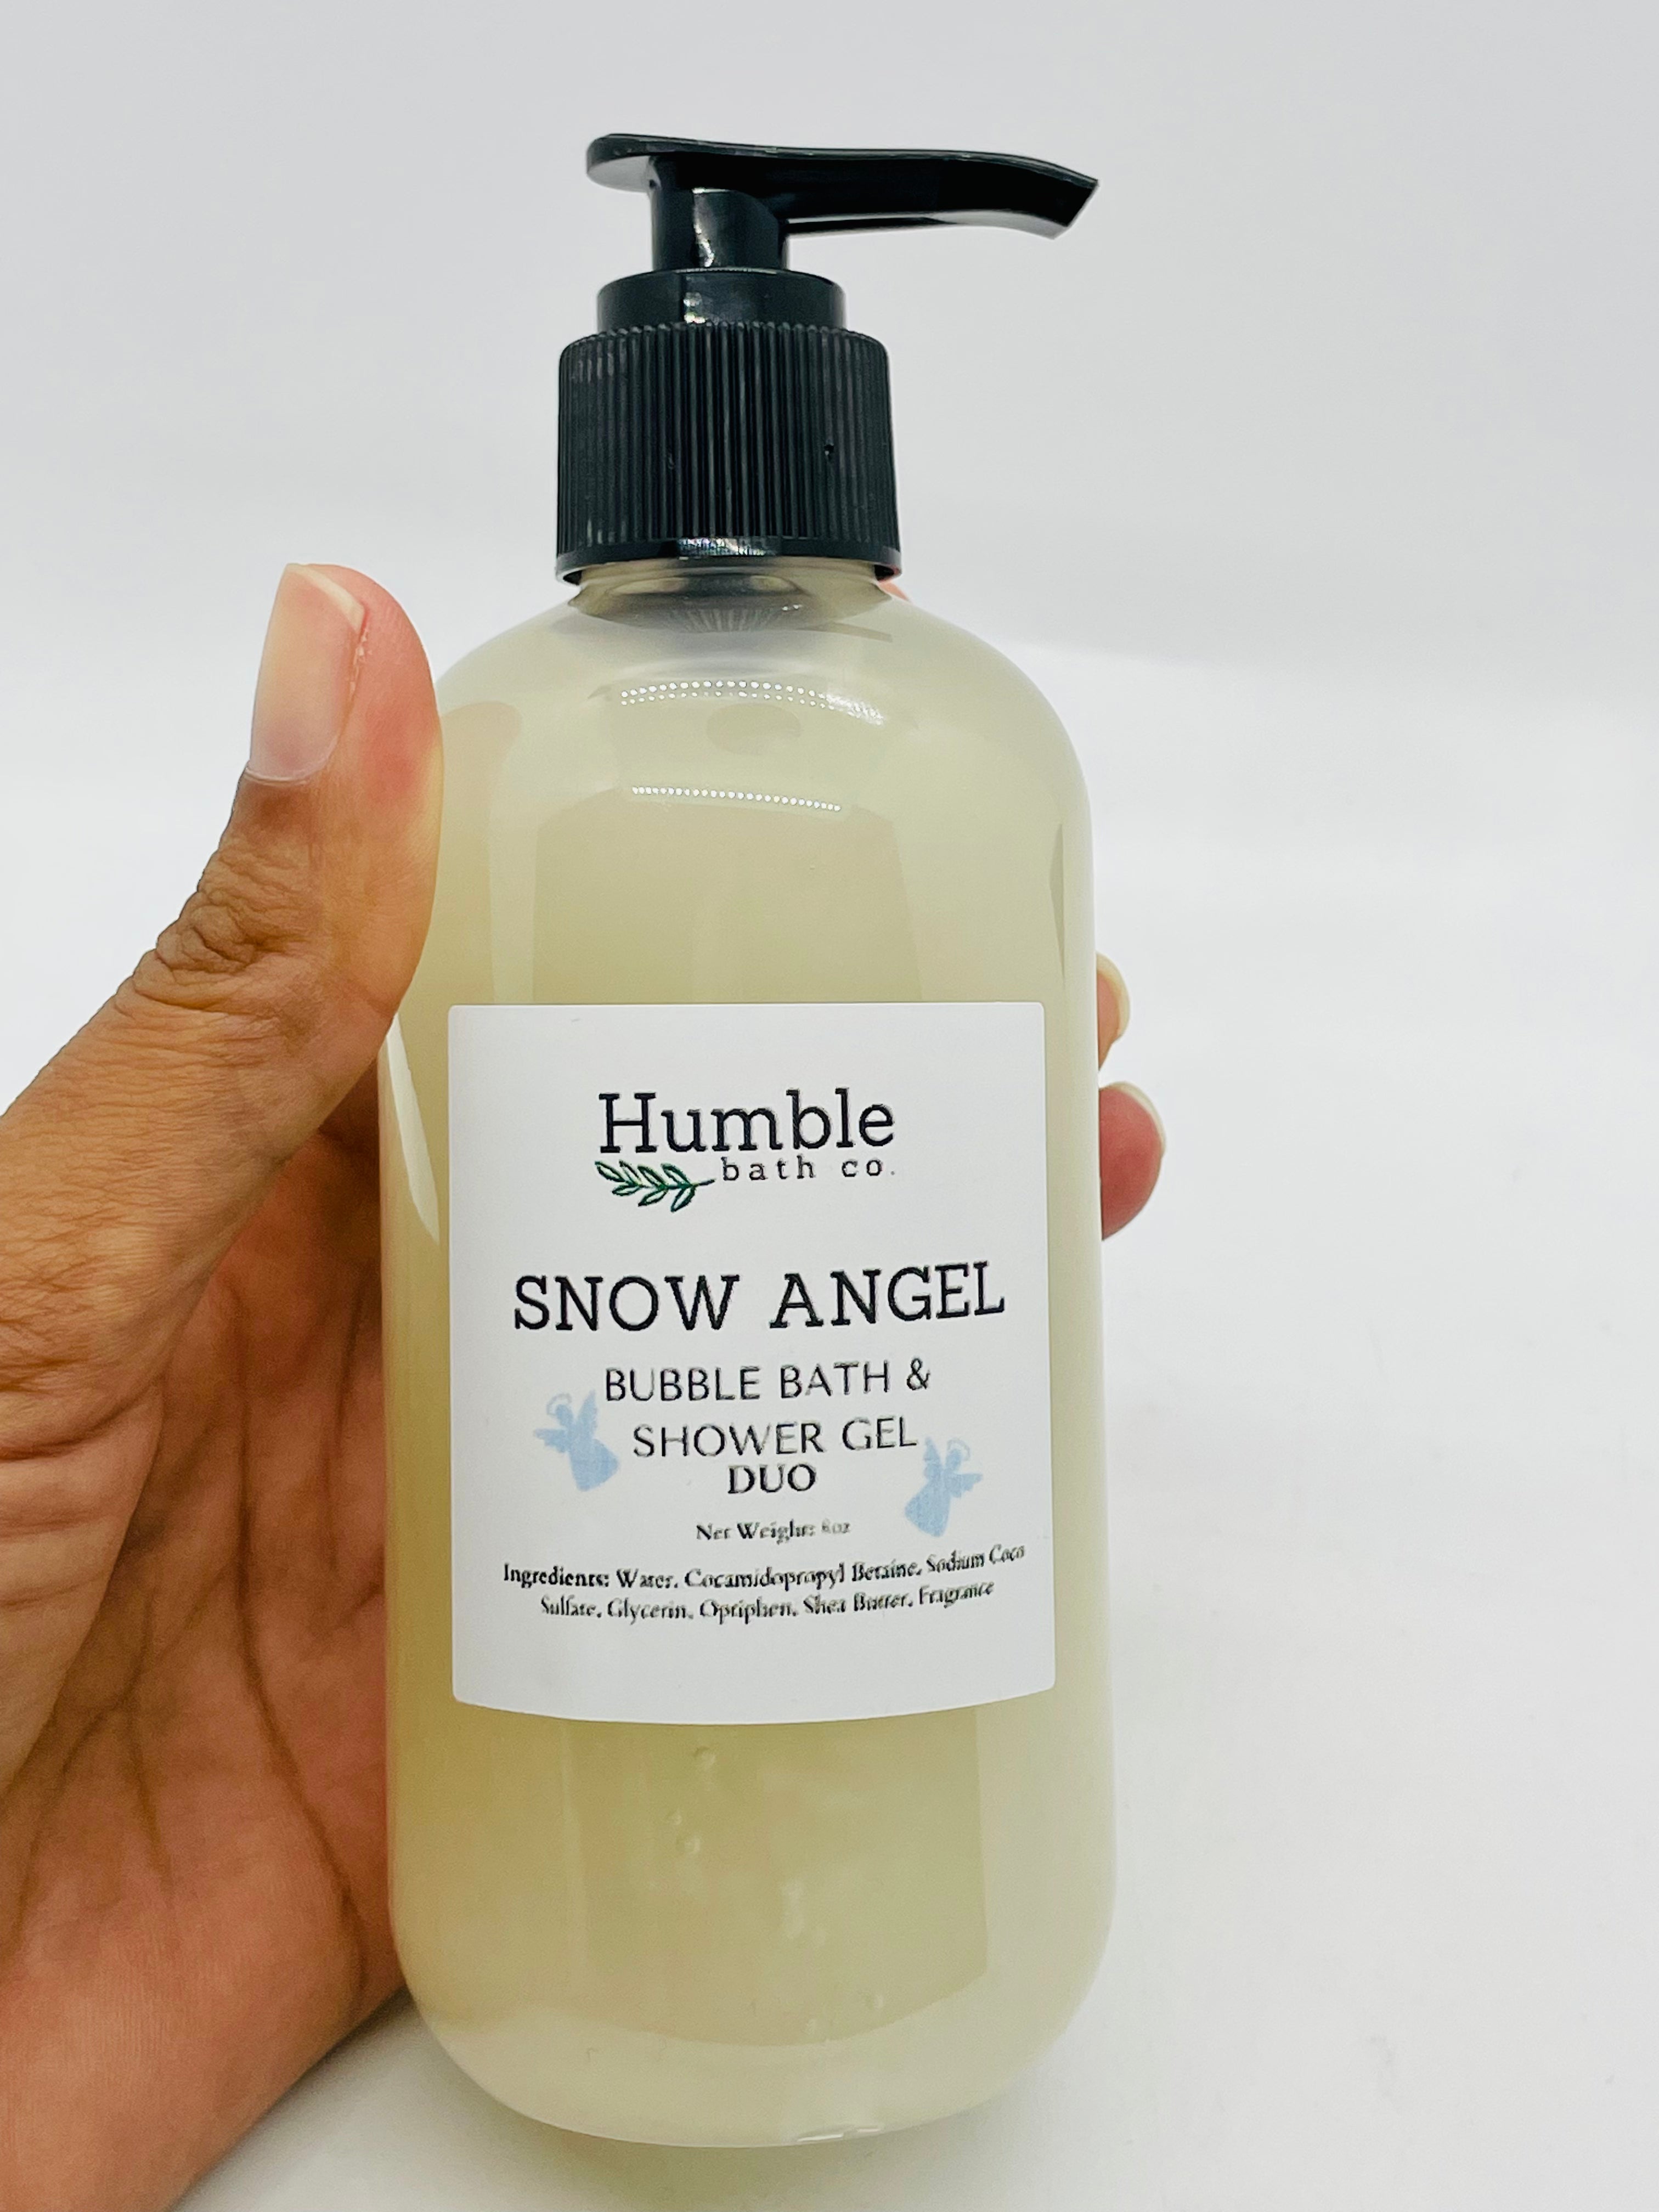 Snow Angel Bubble Bath & Shower Gel Duo